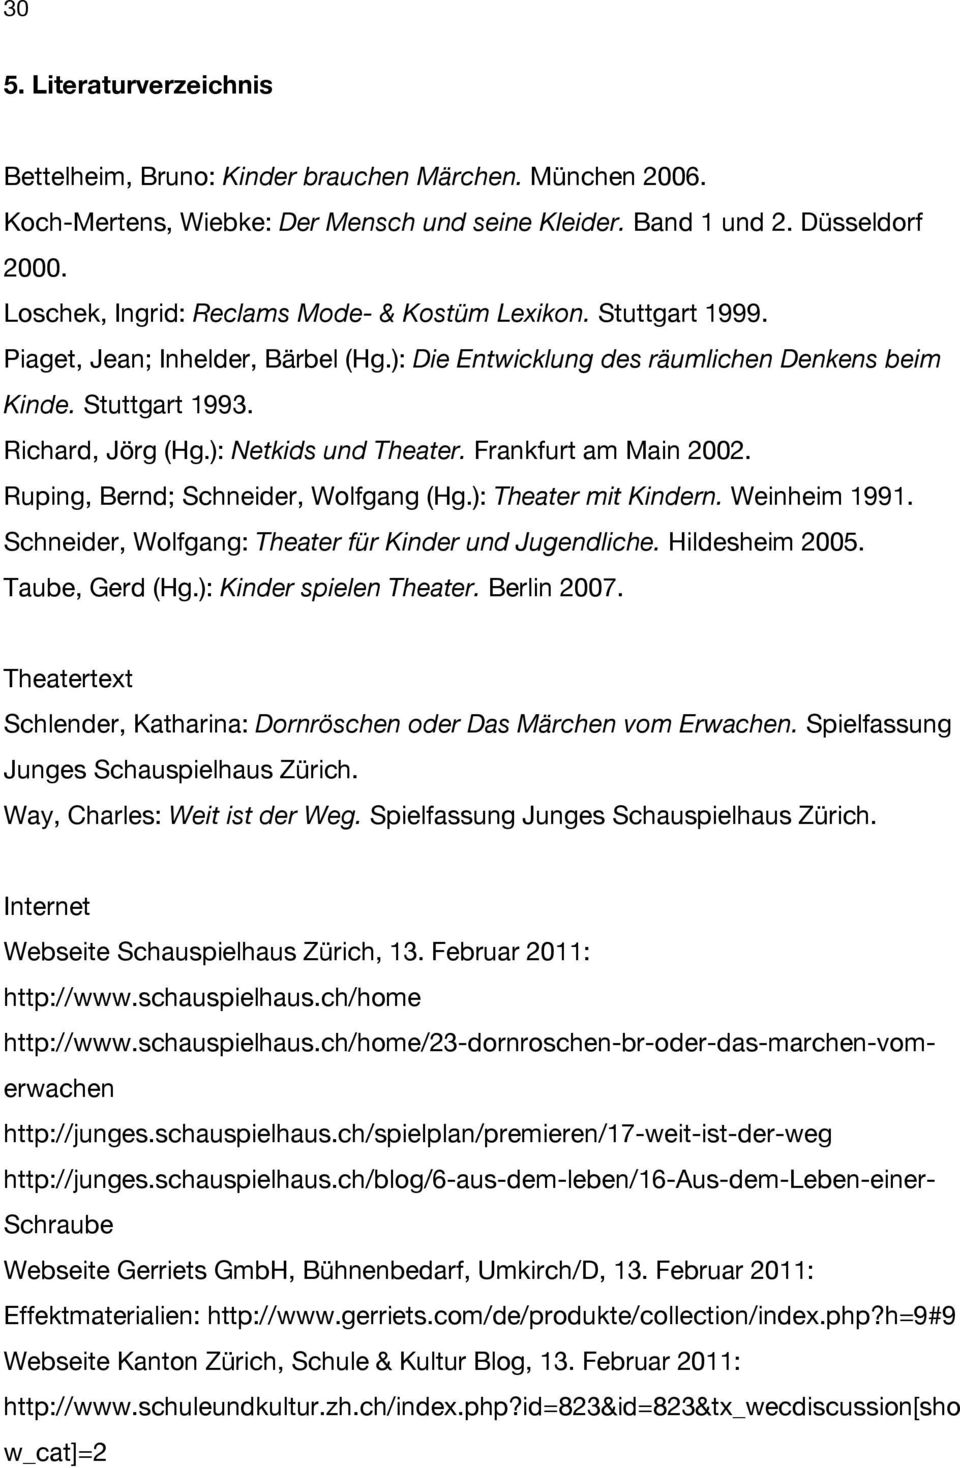 ): Netkids und Theater. Frankfurt am Main 2002. Ruping, Bernd; Schneider, Wolfgang (Hg.): Theater mit Kindern. Weinheim 1991. Schneider, Wolfgang: Theater für Kinder und Jugendliche. Hildesheim 2005.